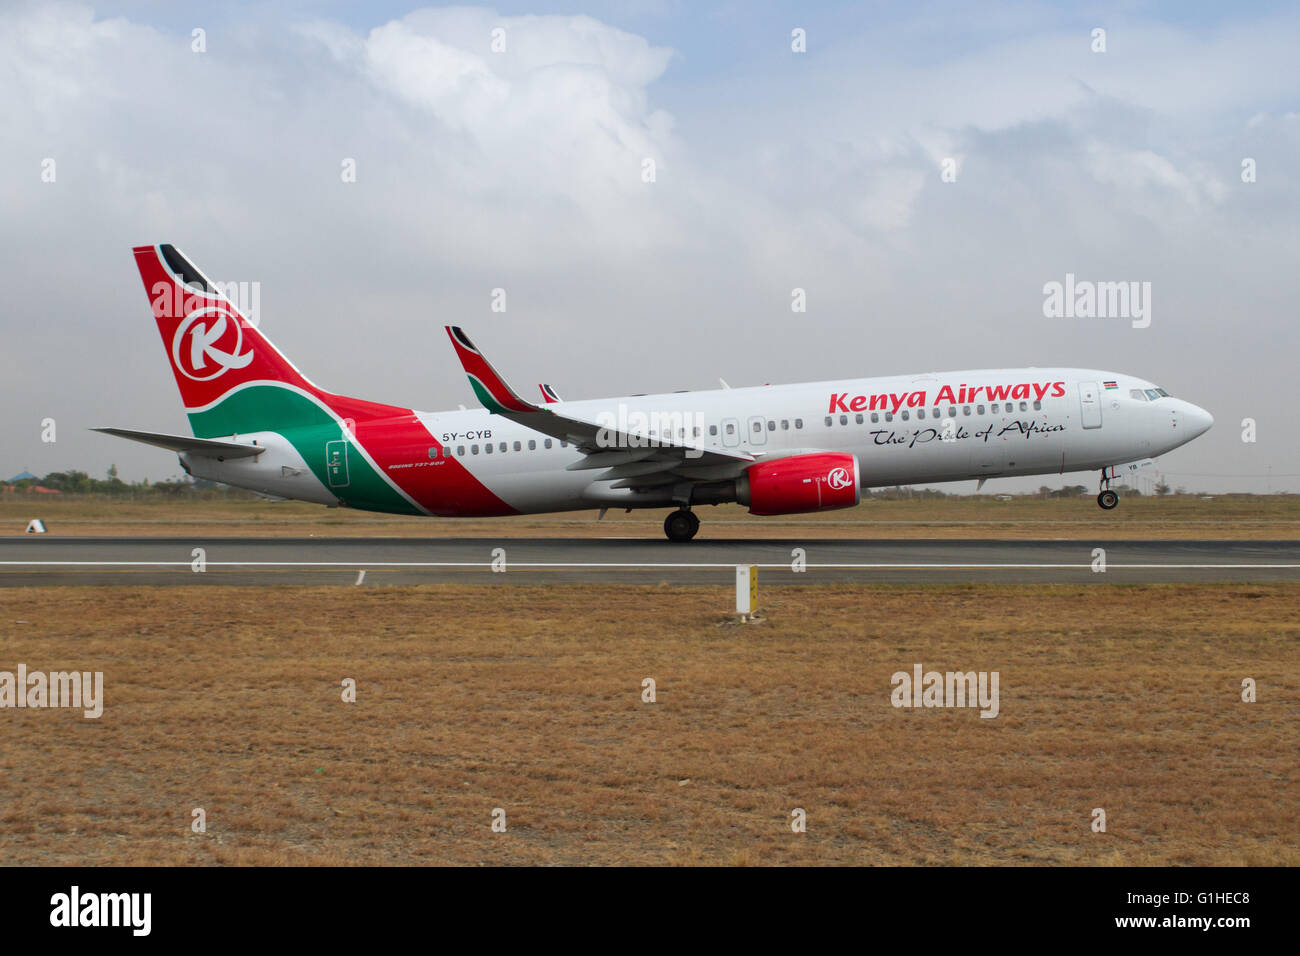 A Kenya Airways Boeing 737-800 takes off from Jomo Kenyatta Airport, Nairobi, Kenya Stock Photo